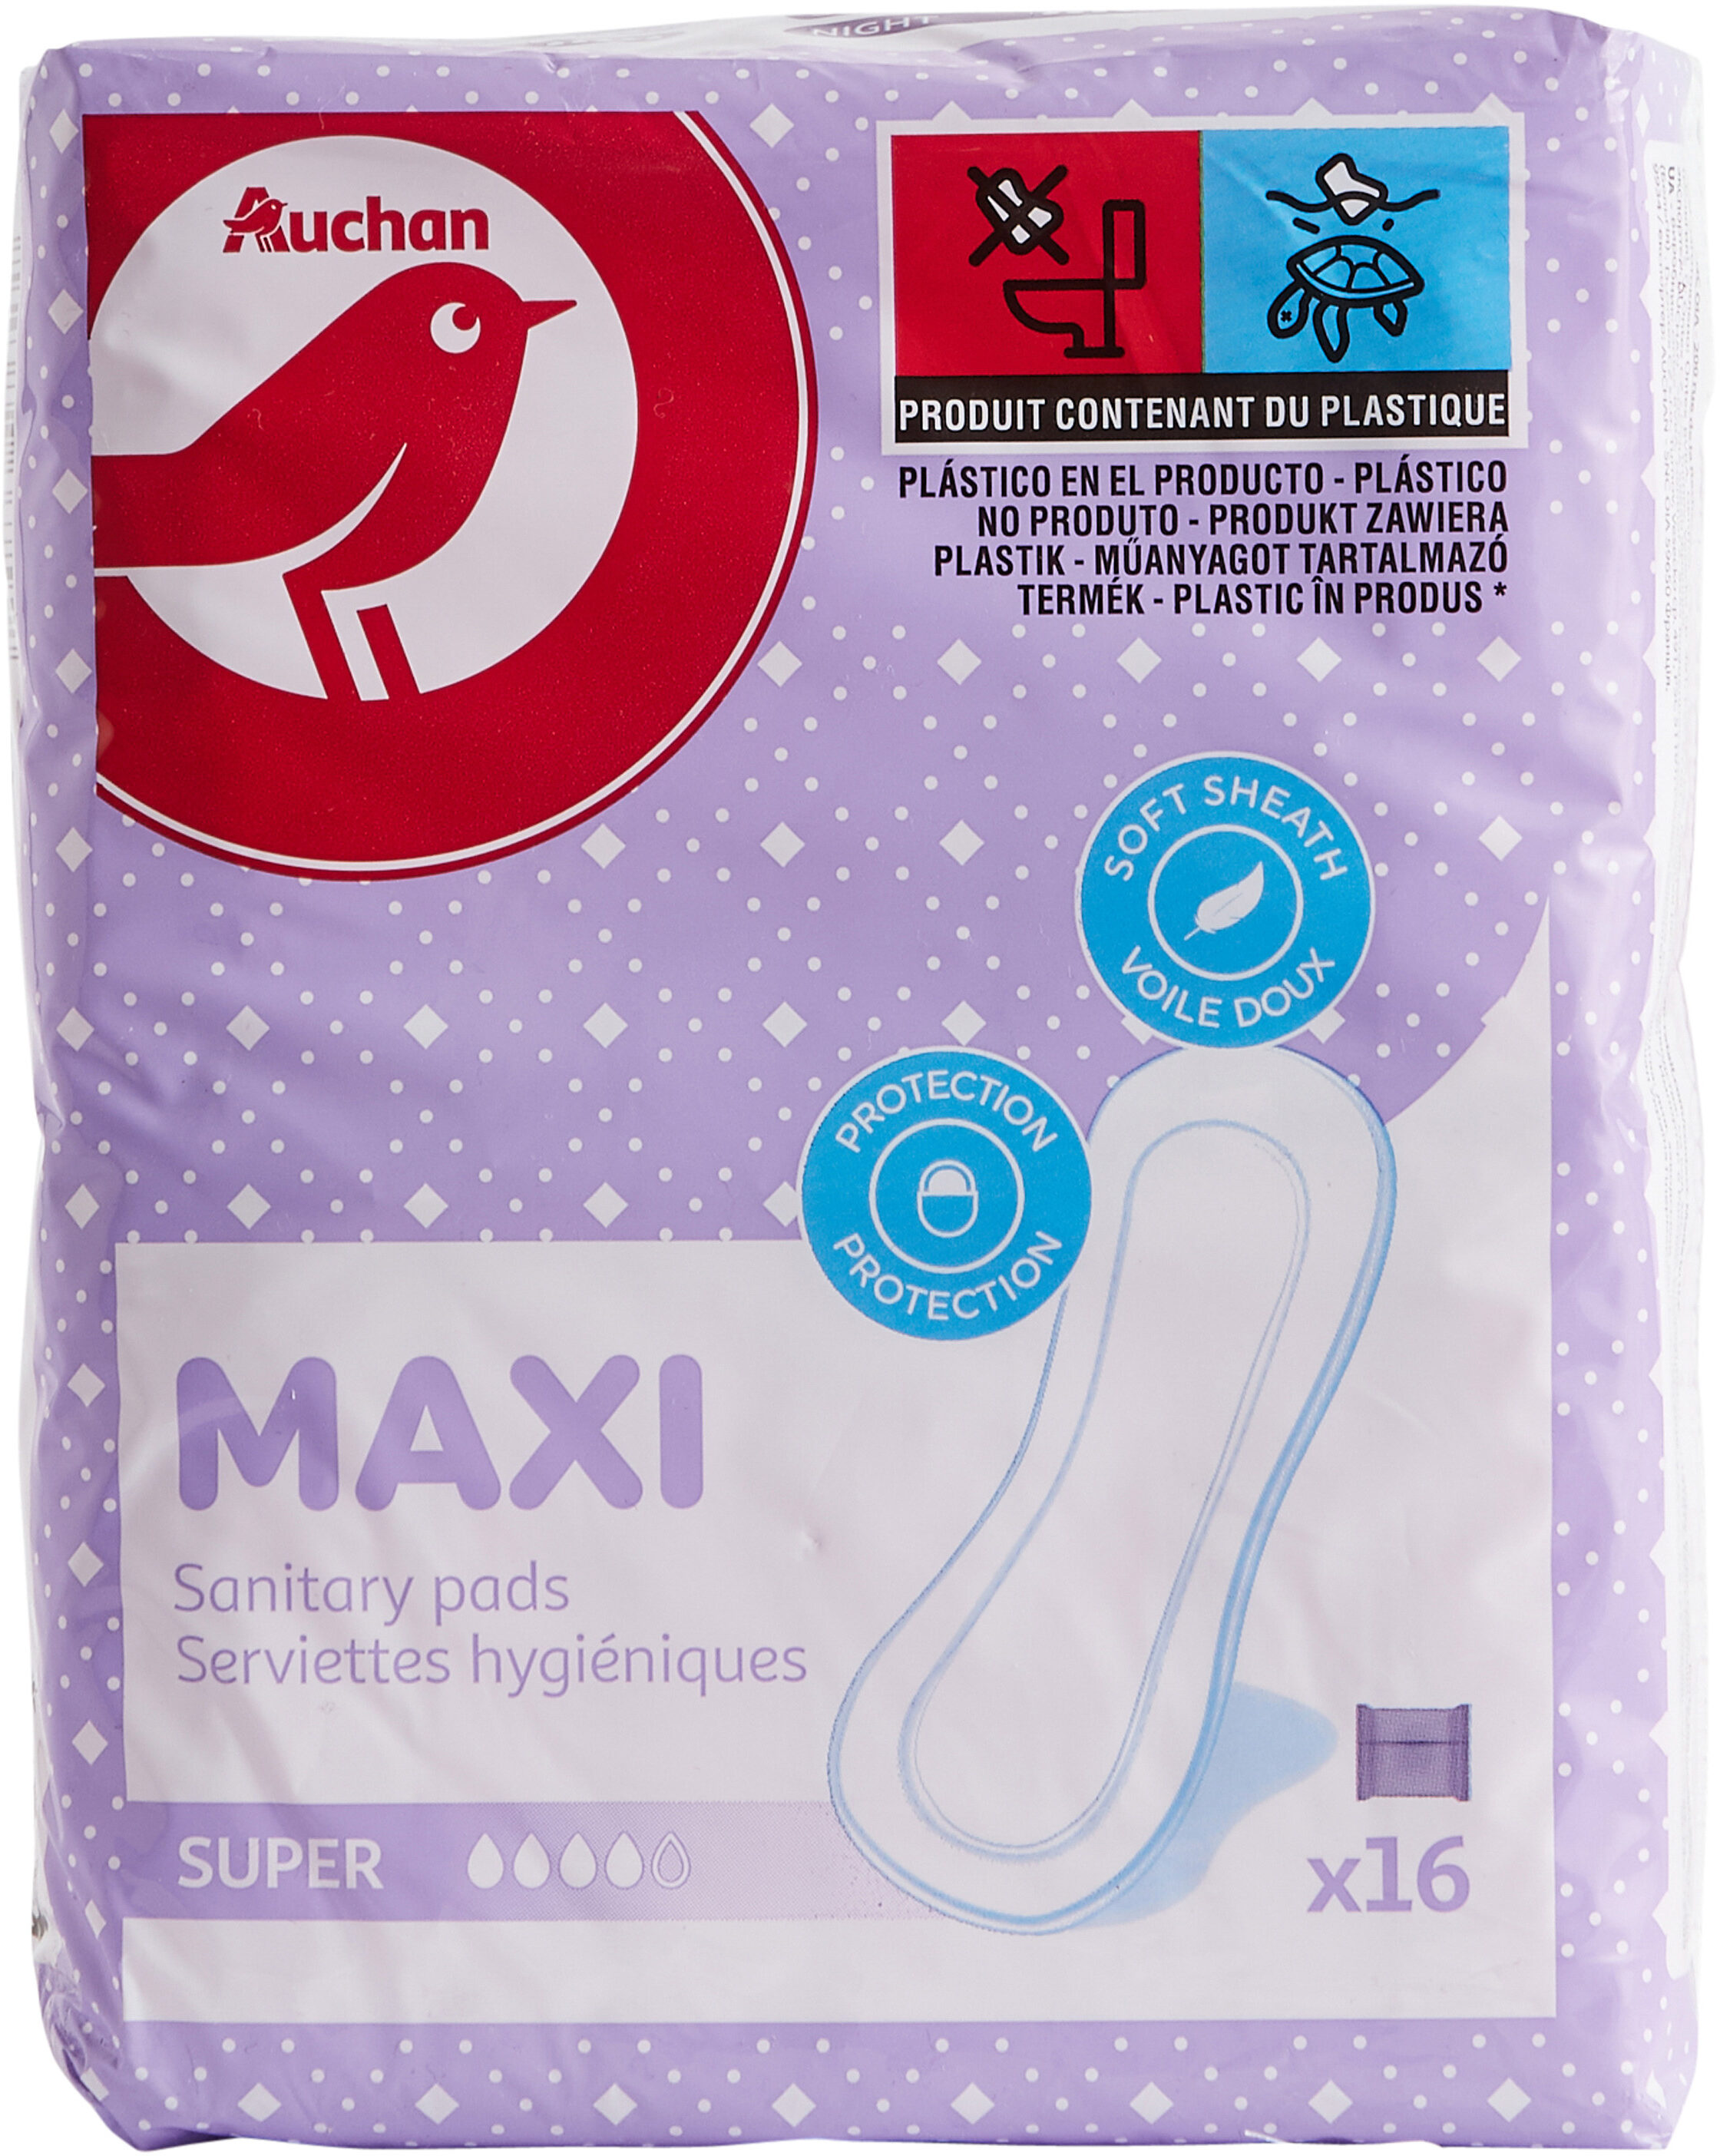 Serviettes hygiéniques Maxi Super x16 - Product - en